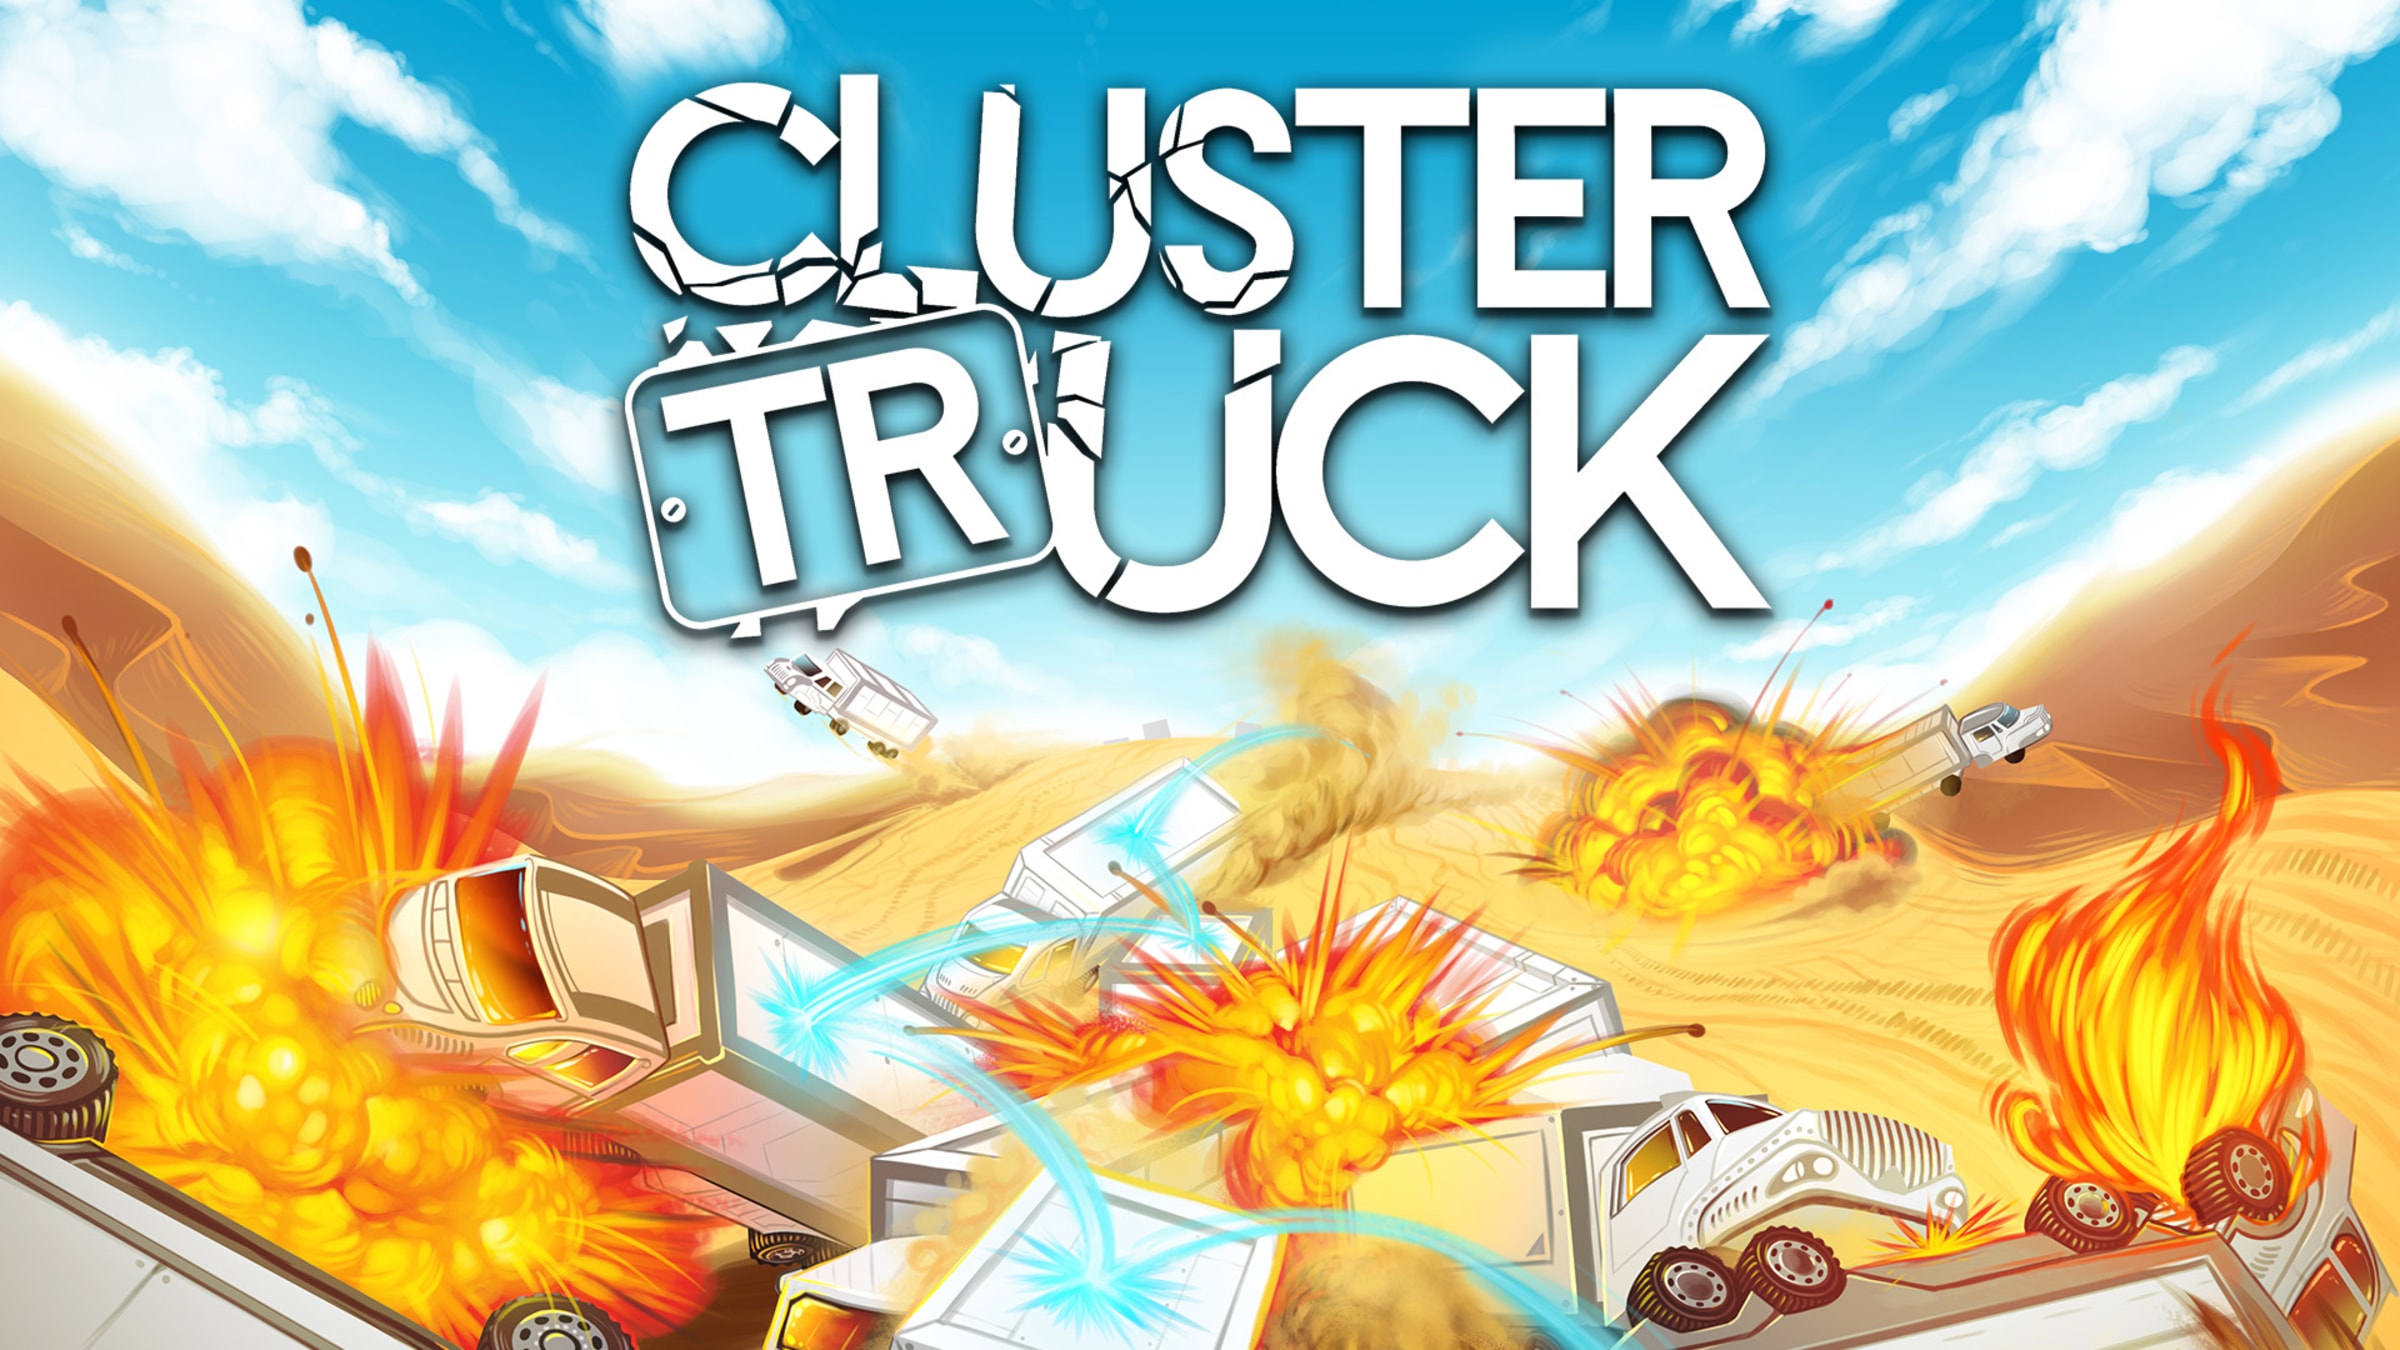 Clustertruck - Vamos pular de caminhões em movimento!